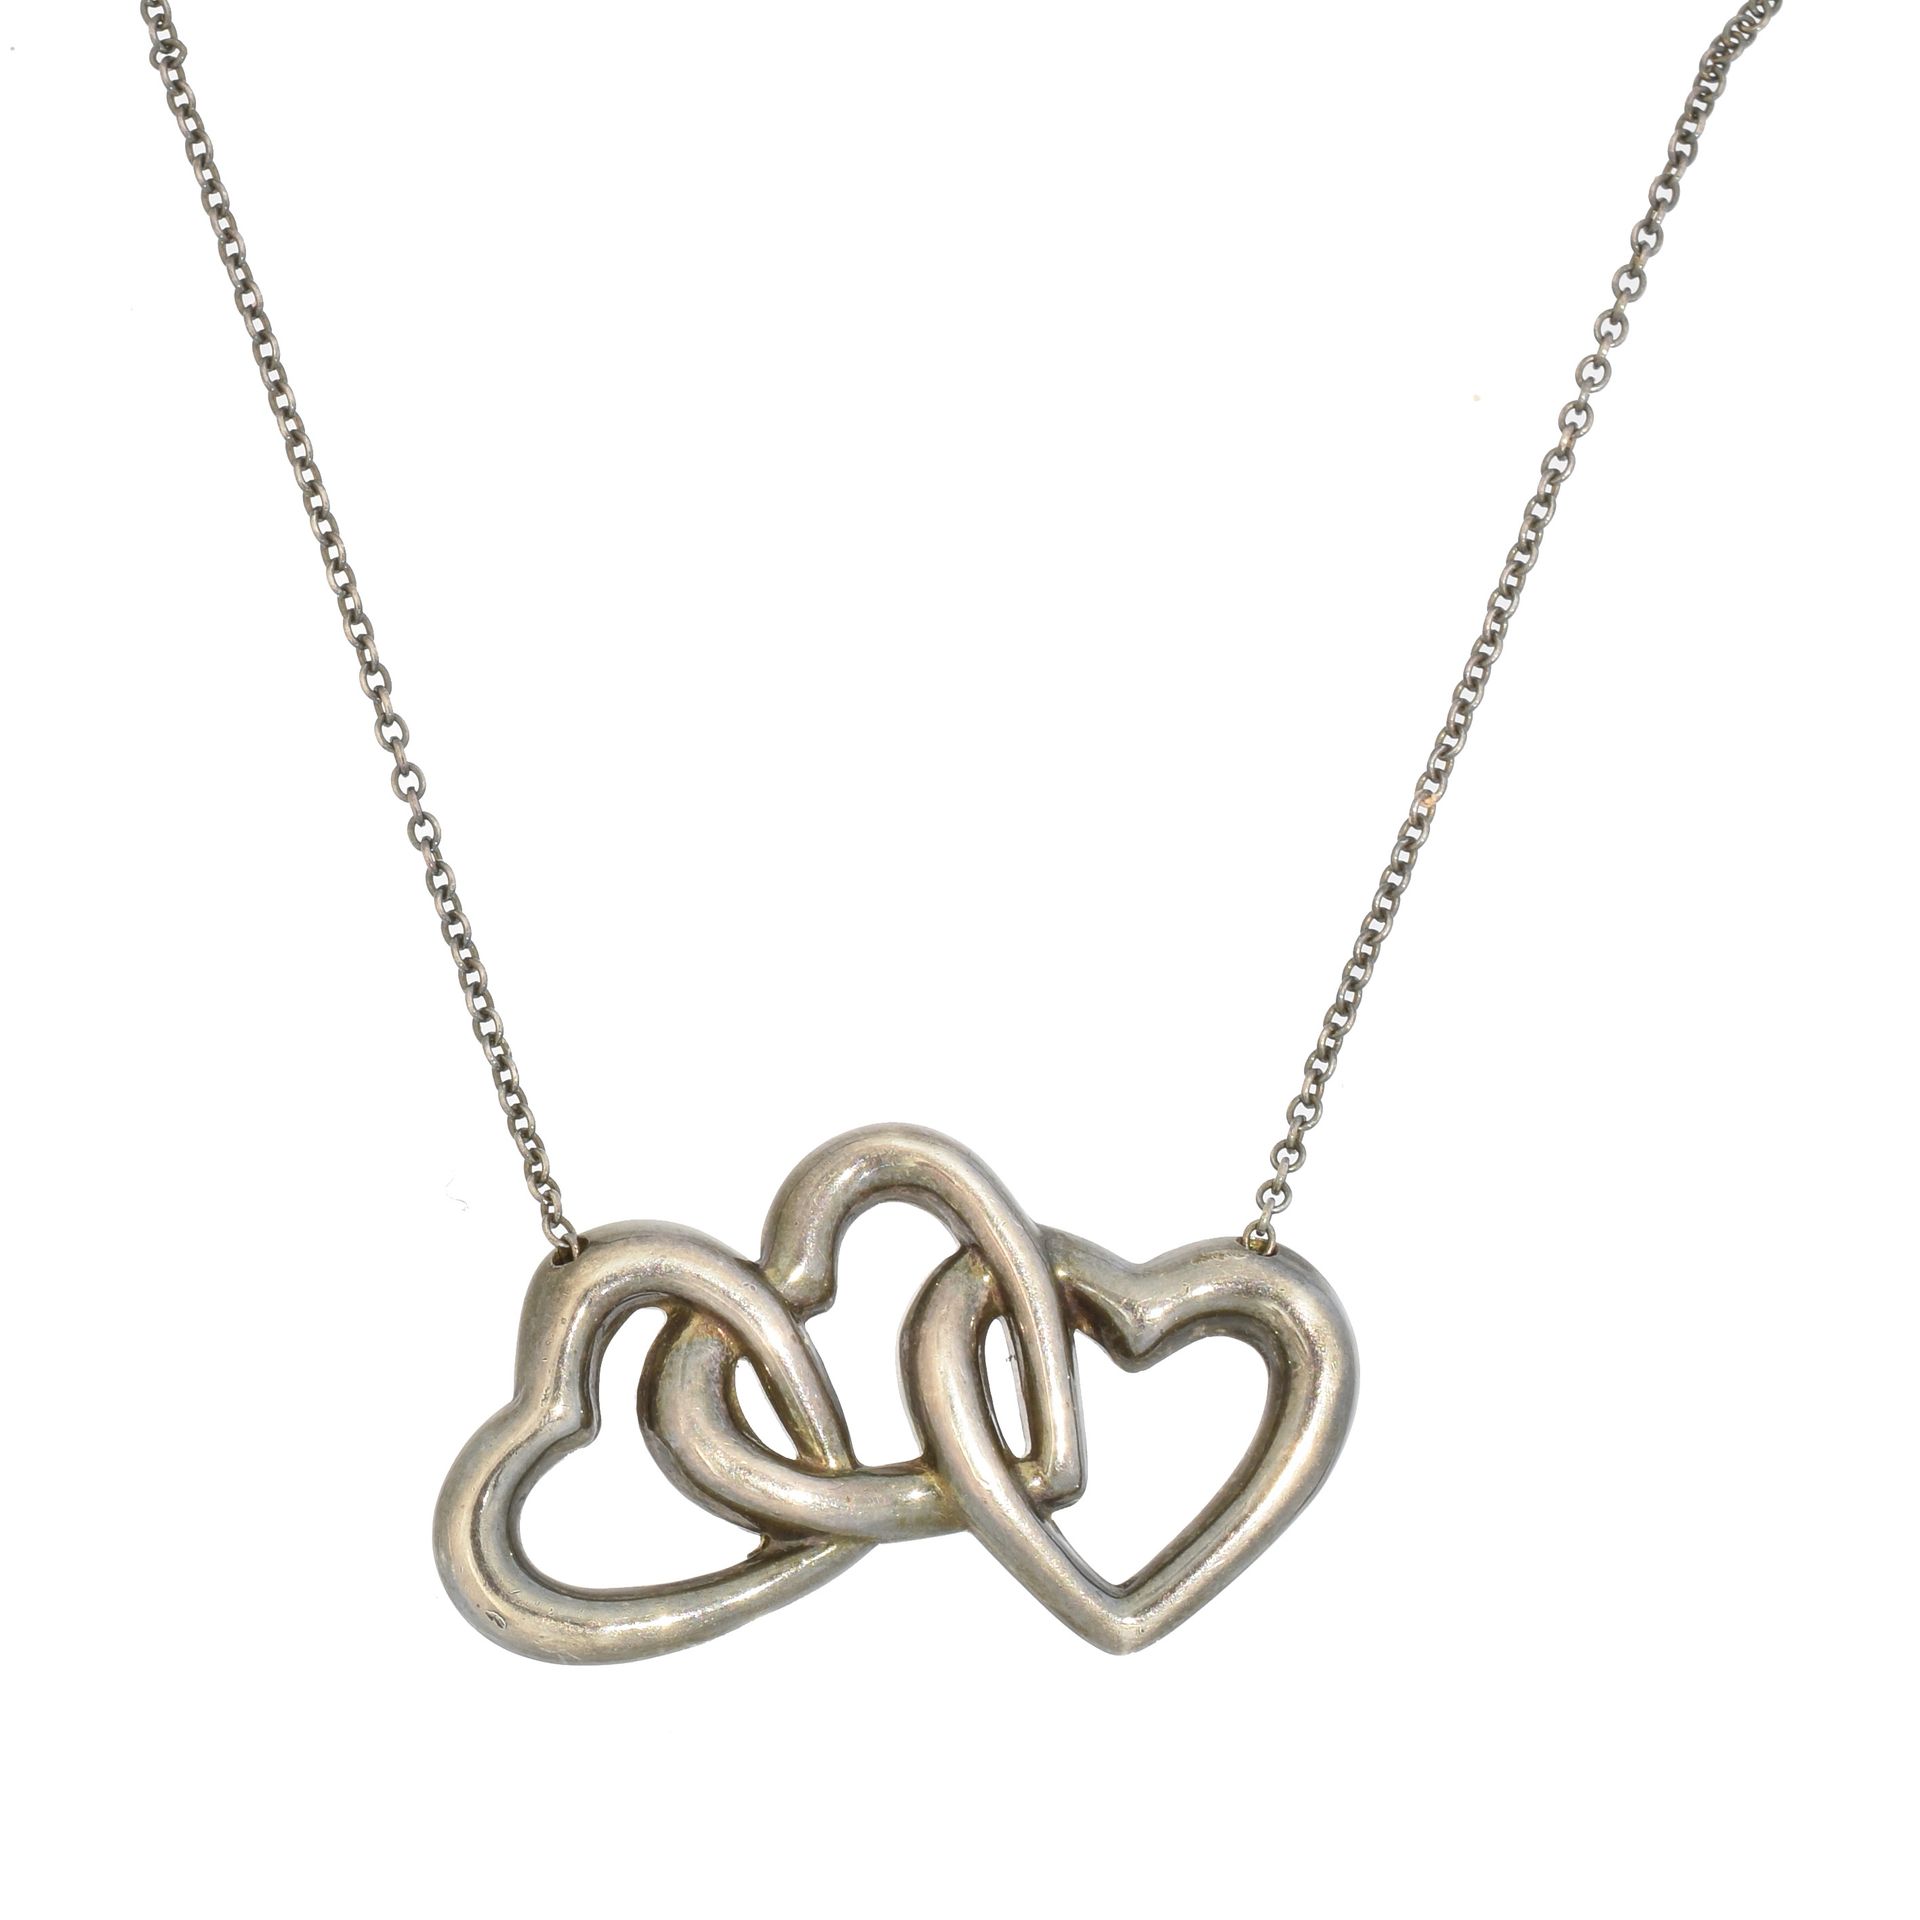 A Tiffany & Co. Triple Heart Necklace, 
A Tiffany & Co. Triple Heart Necklace, t&hellip;